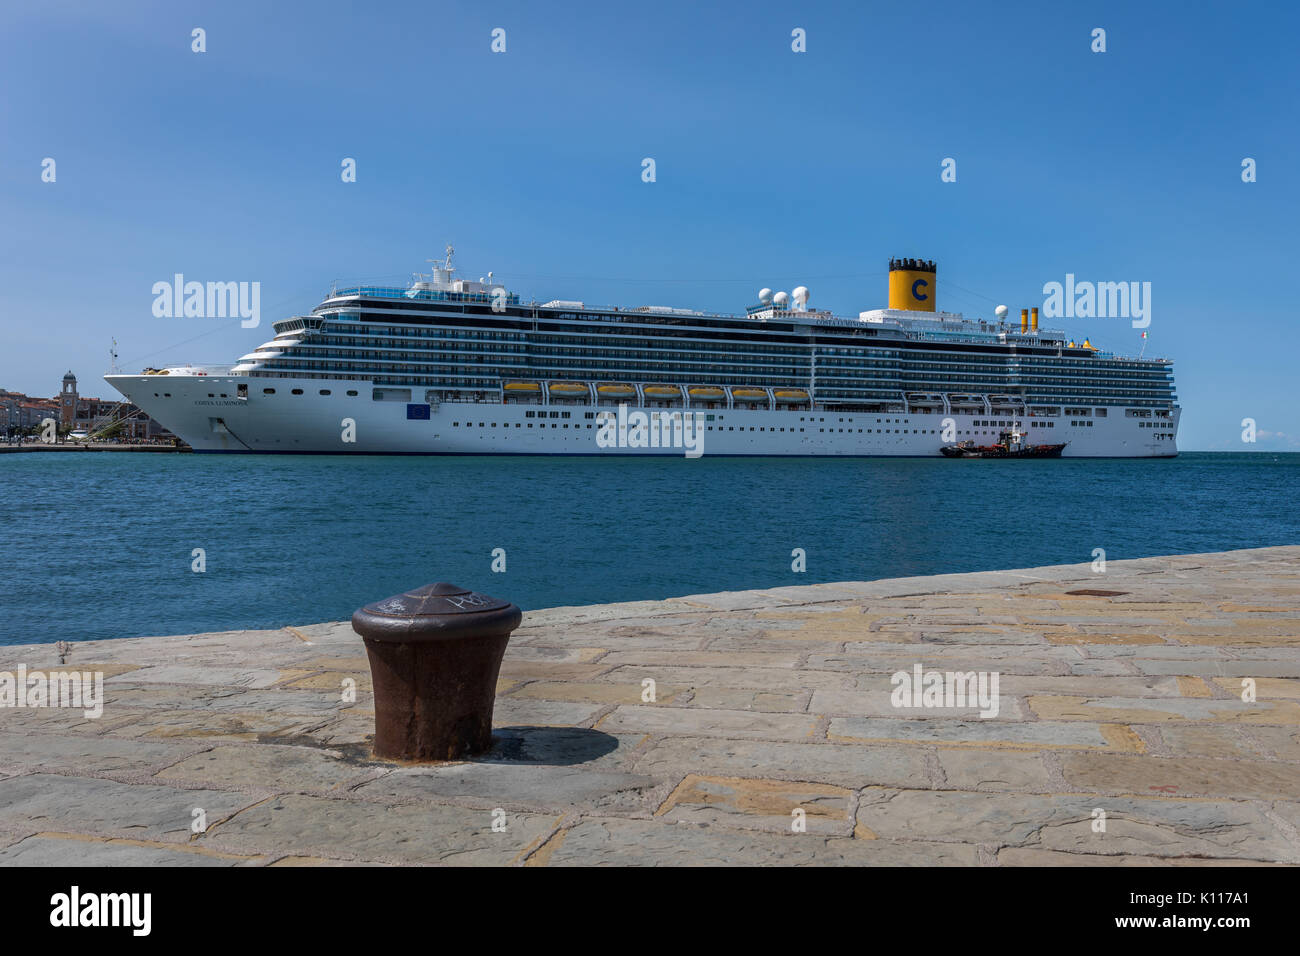 Navire de croisière de luxe Costa Luminosa amarré au port de Trieste, Frioul-Vénétie Julienne, Italie Banque D'Images